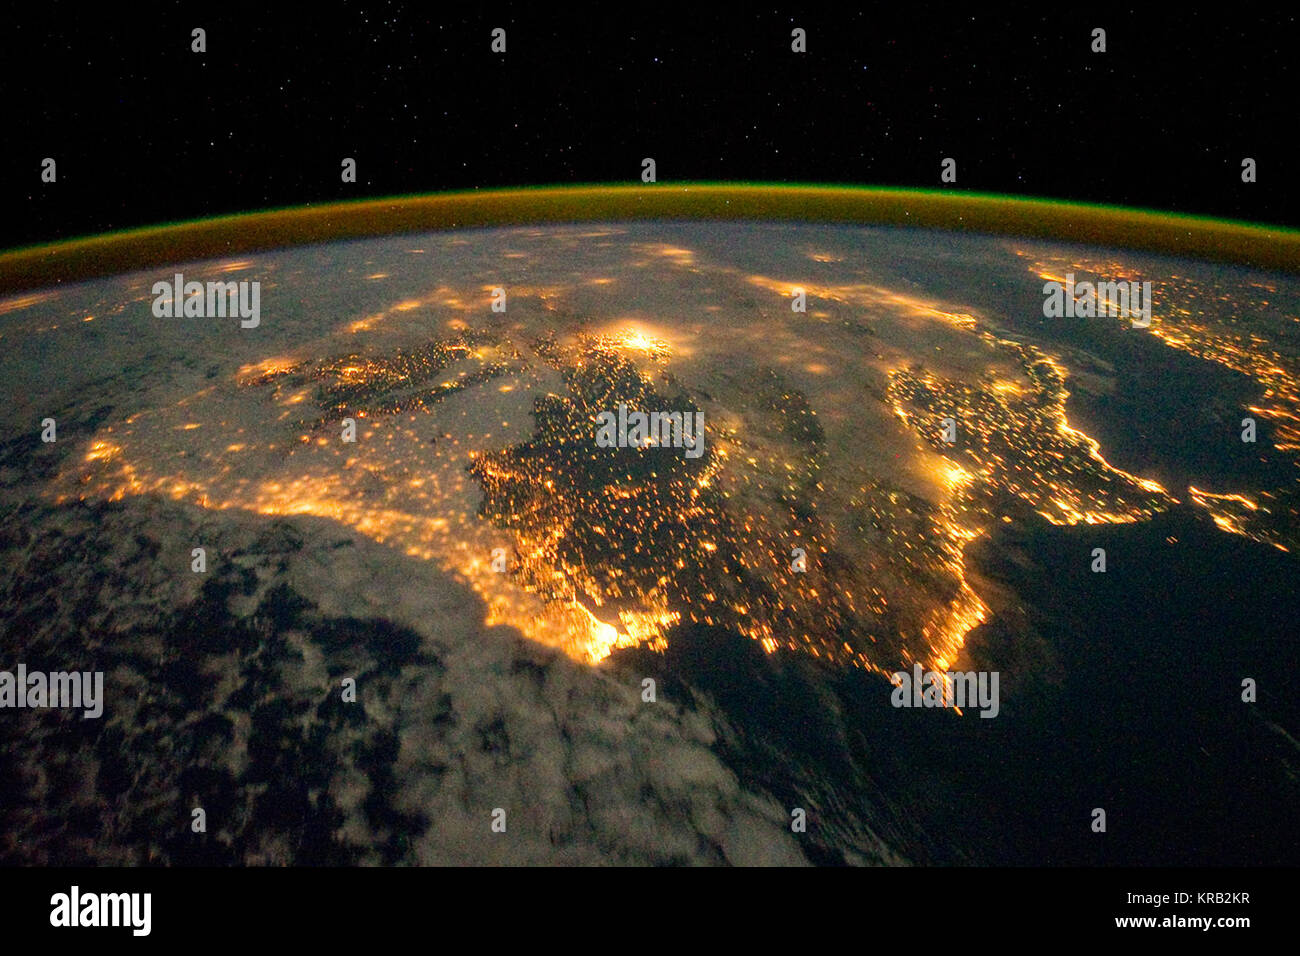 Die Lichter der Stadt von Spanien und Portugal die Iberische Halbinsel definieren in diesem Foto von der Internationalen Raumstation (ISS). Mehrere große Ballungsgebiete sind sichtbar, durch ihre relativ große gekennzeichnet und hell beleuchtete Bereiche, einschließlich der Hauptstadt in Madrid, Spanien - in der Nähe des Zentrums von Inneren der Halbinsel - und Lissabon, Portugal - Entlang der südwestlichen Küste gelegen. Die antike Stadt Sevilla, sichtbar nördlich der Meerenge von Gibraltar, ist eine der größten Städte in Spanien. Der Astronaut blickt in Richtung Osten, und ist Teil eines Time-lapse Serie von imag Stockfoto